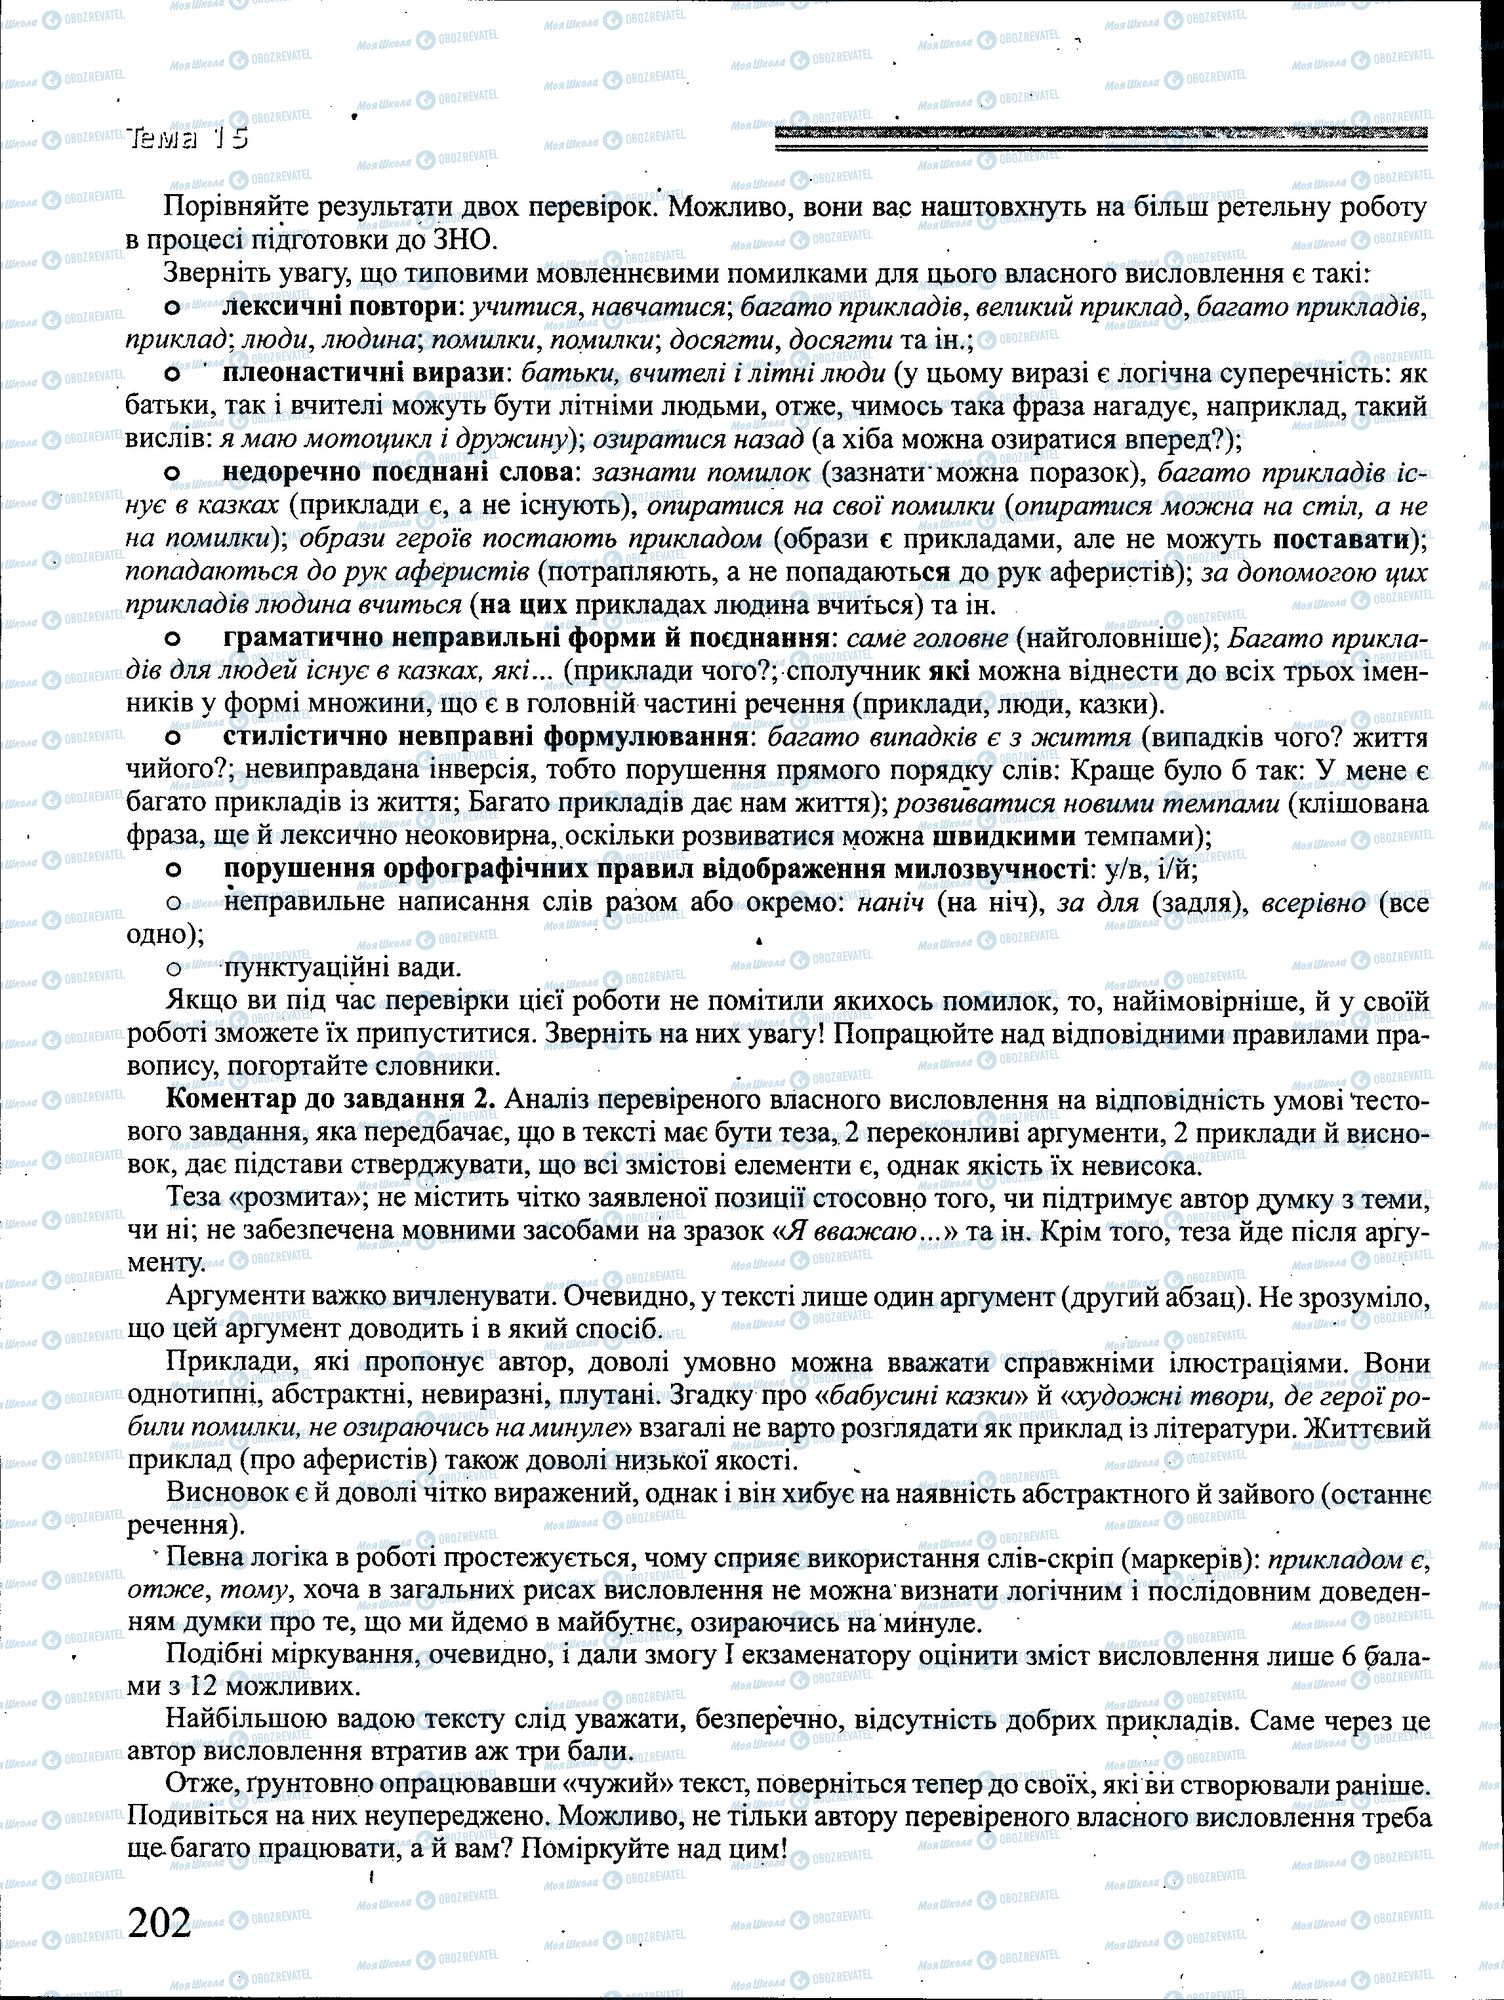 ДПА Укр мова 4 класс страница 202